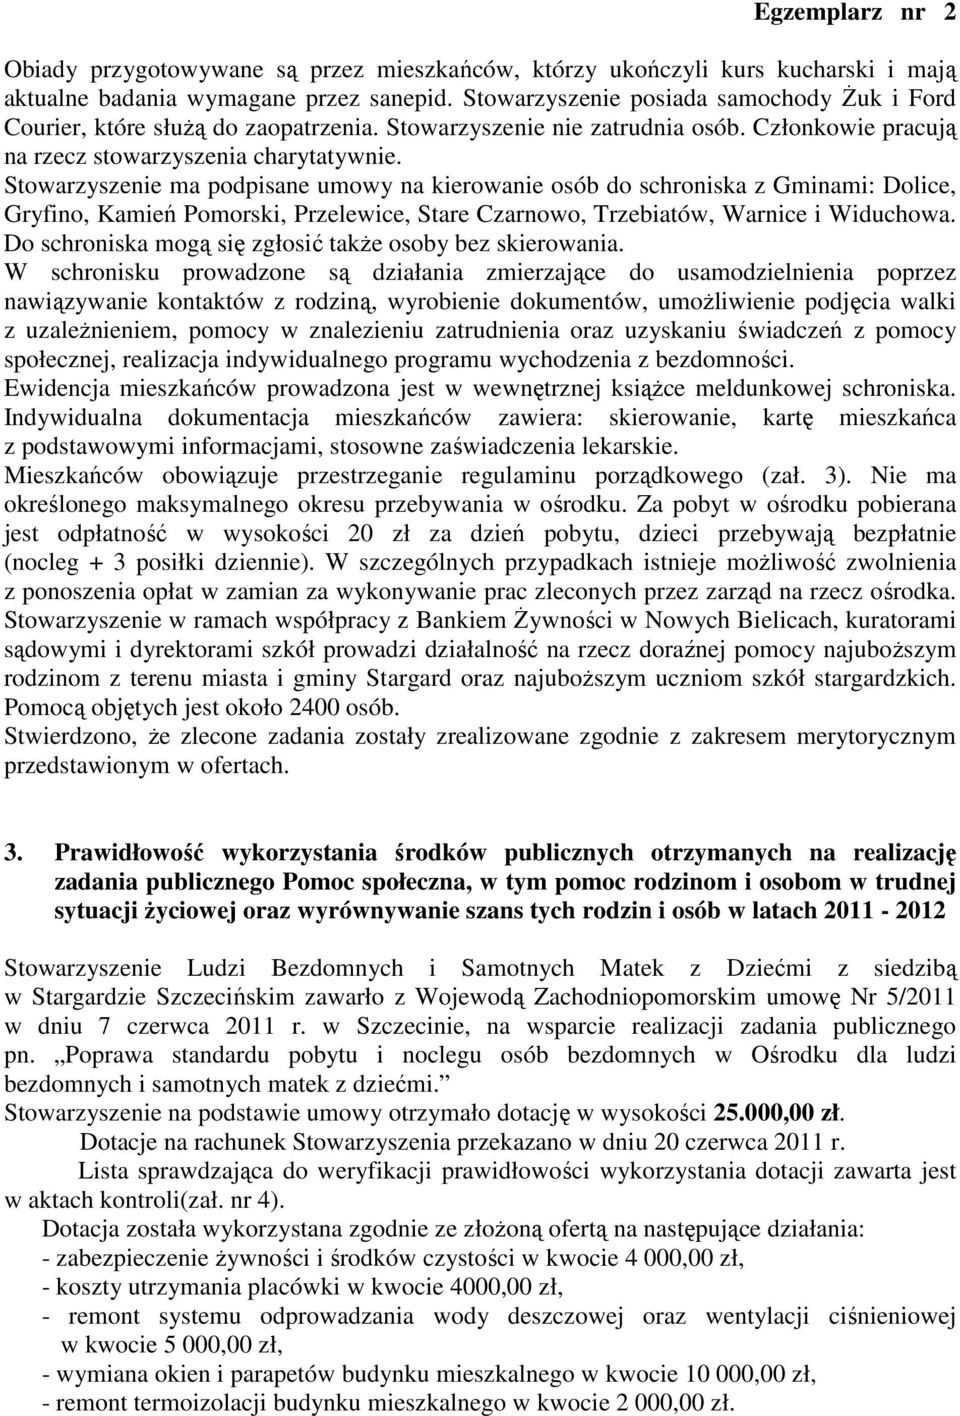 Stowarzyszenie ma podpisane umowy na kierowanie osób do schroniska z Gminami: Dolice, Gryfino, Kamień Pomorski, Przelewice, Stare Czarnowo, Trzebiatów, Warnice i Widuchowa.